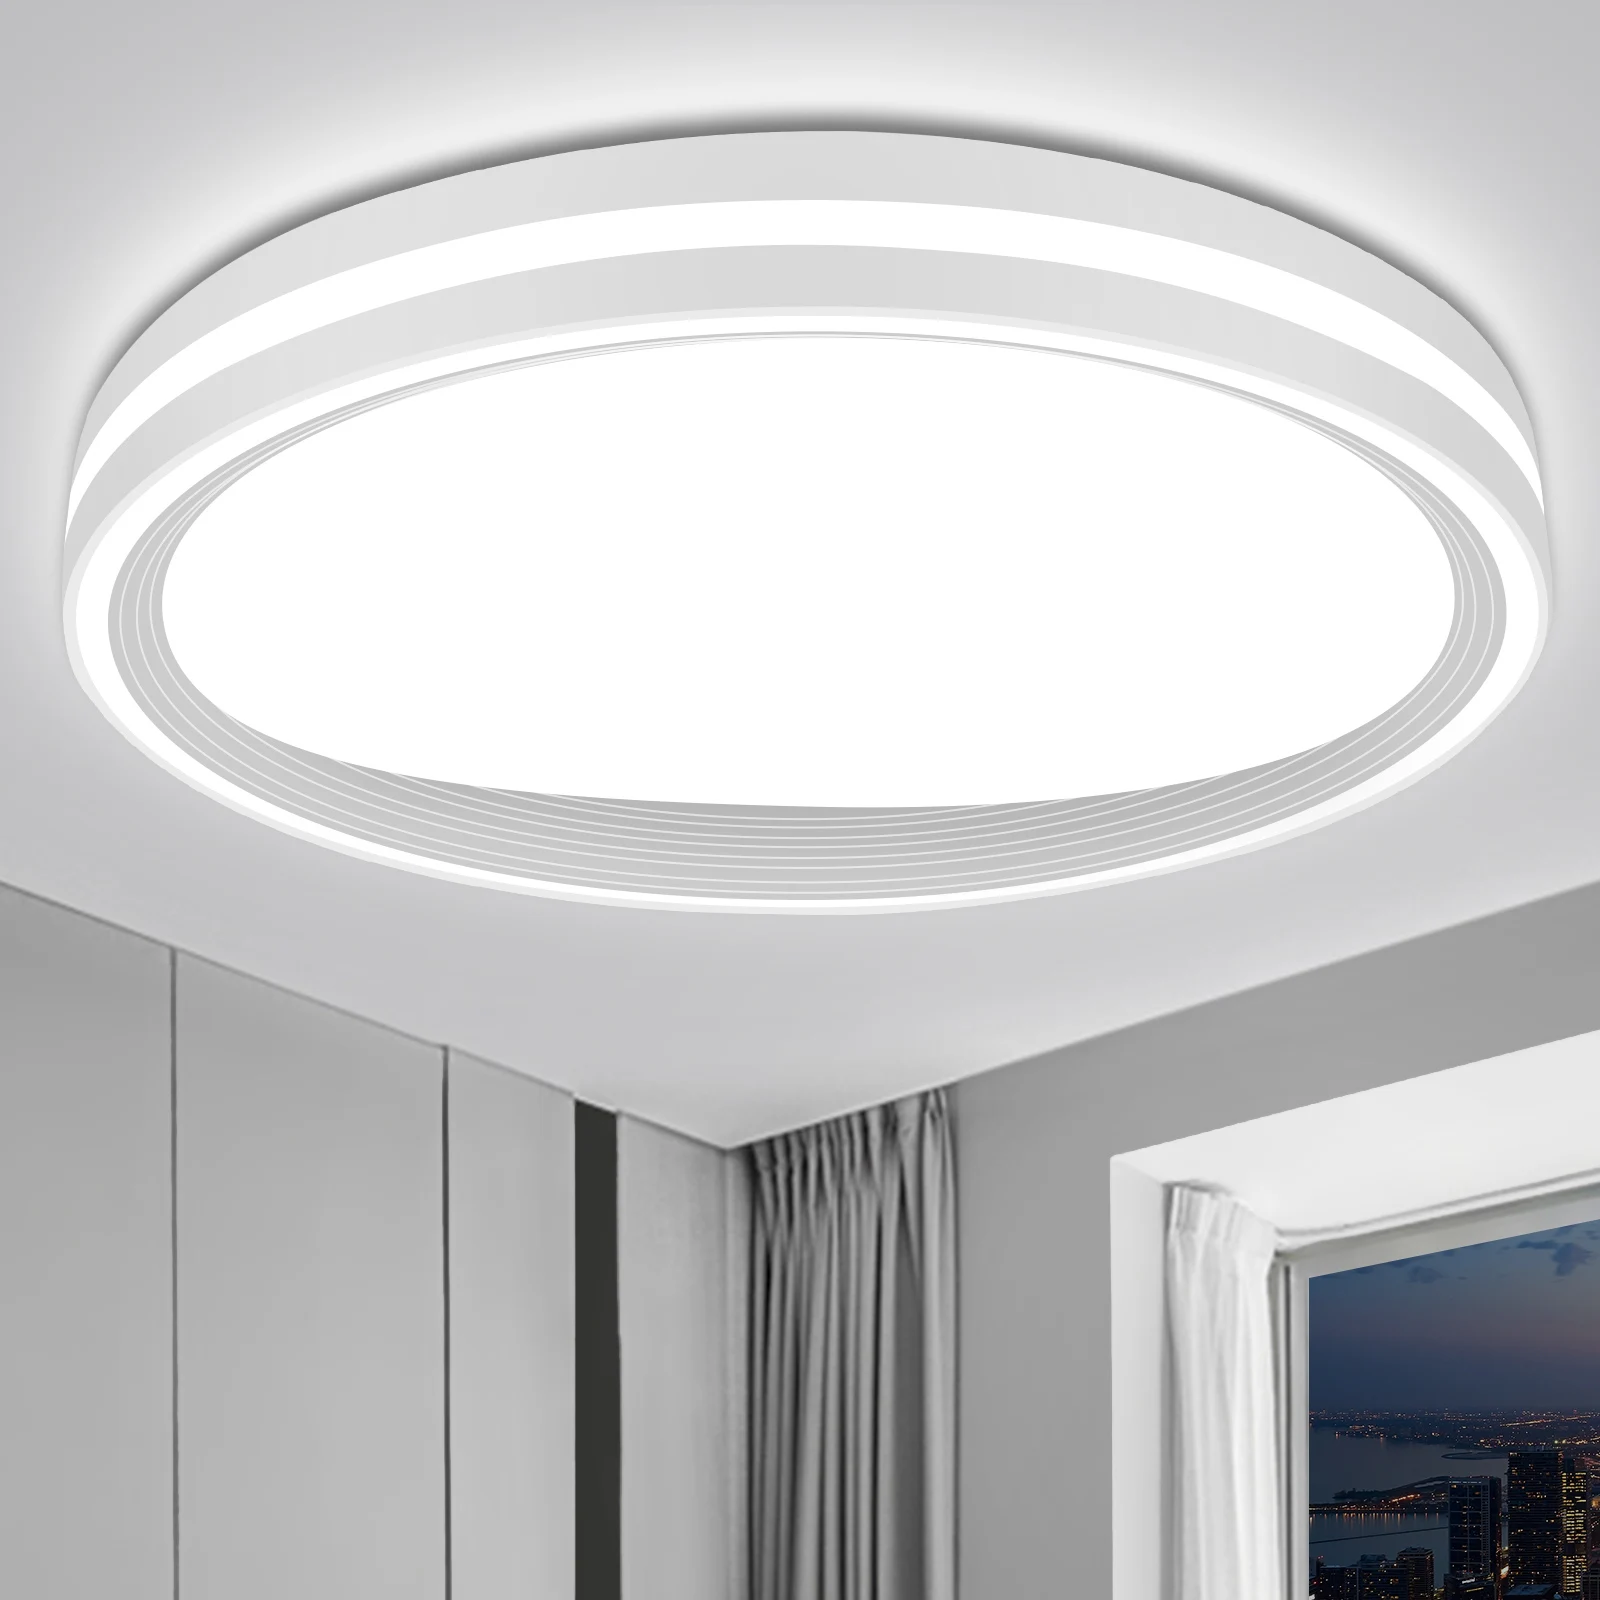 

Modern Home Lighting Led Ceiling Light 12.8 Inch 24W For Living Room Bedroom Bathroom Balcony Corridor Porch